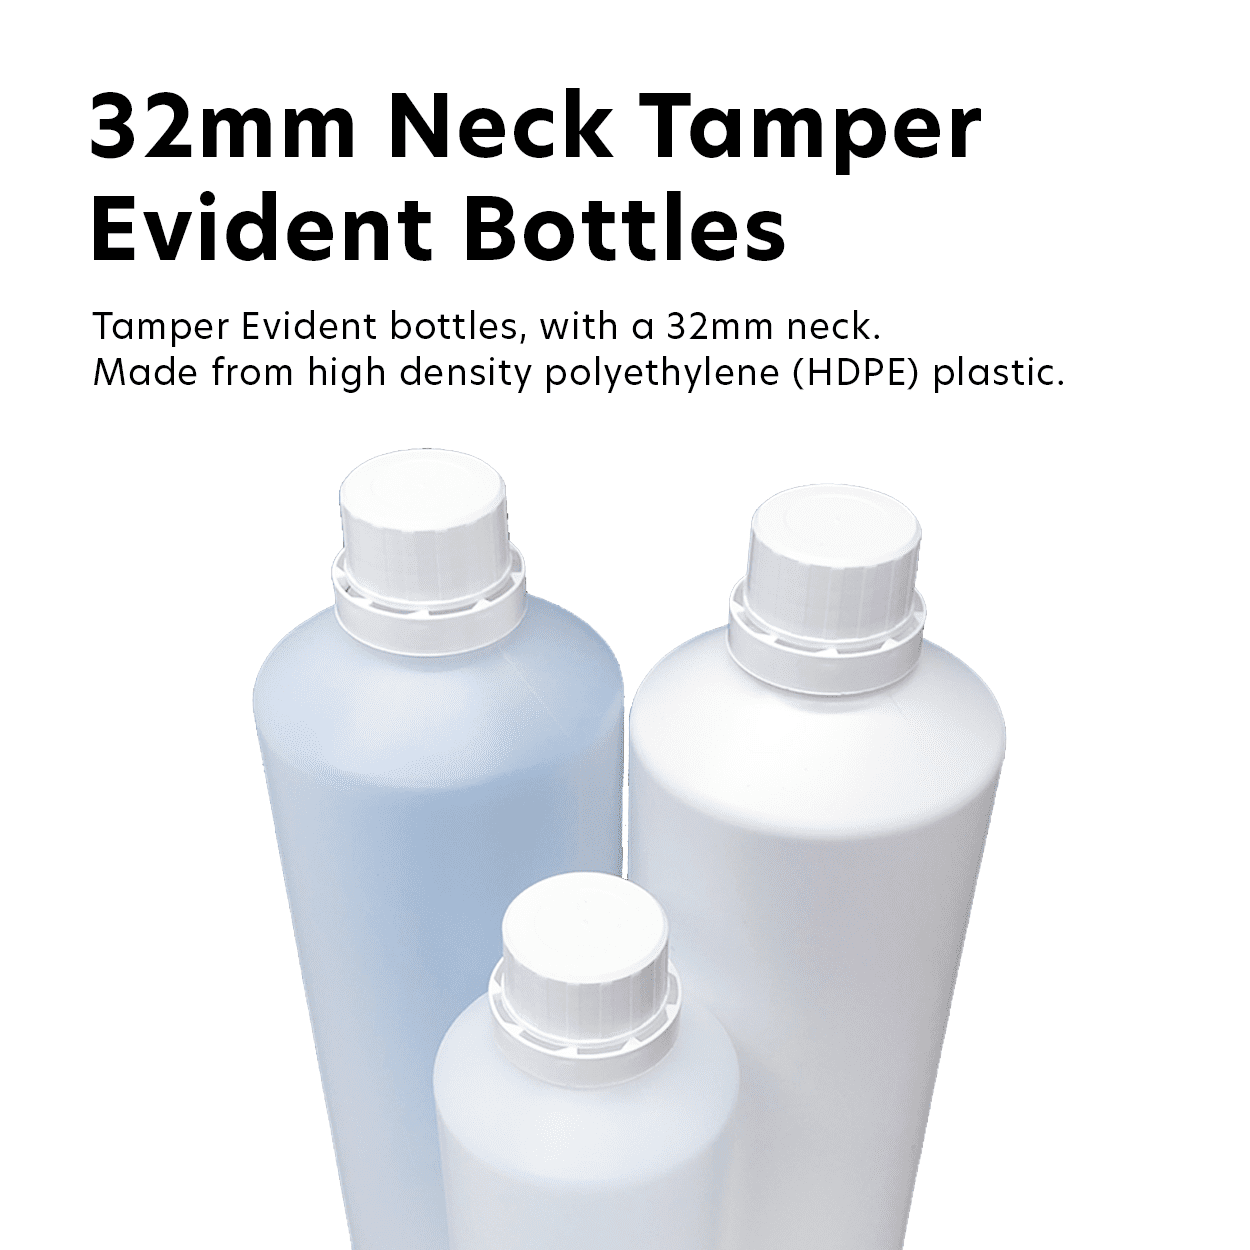 32mm Neck Tamper Evident Bottles